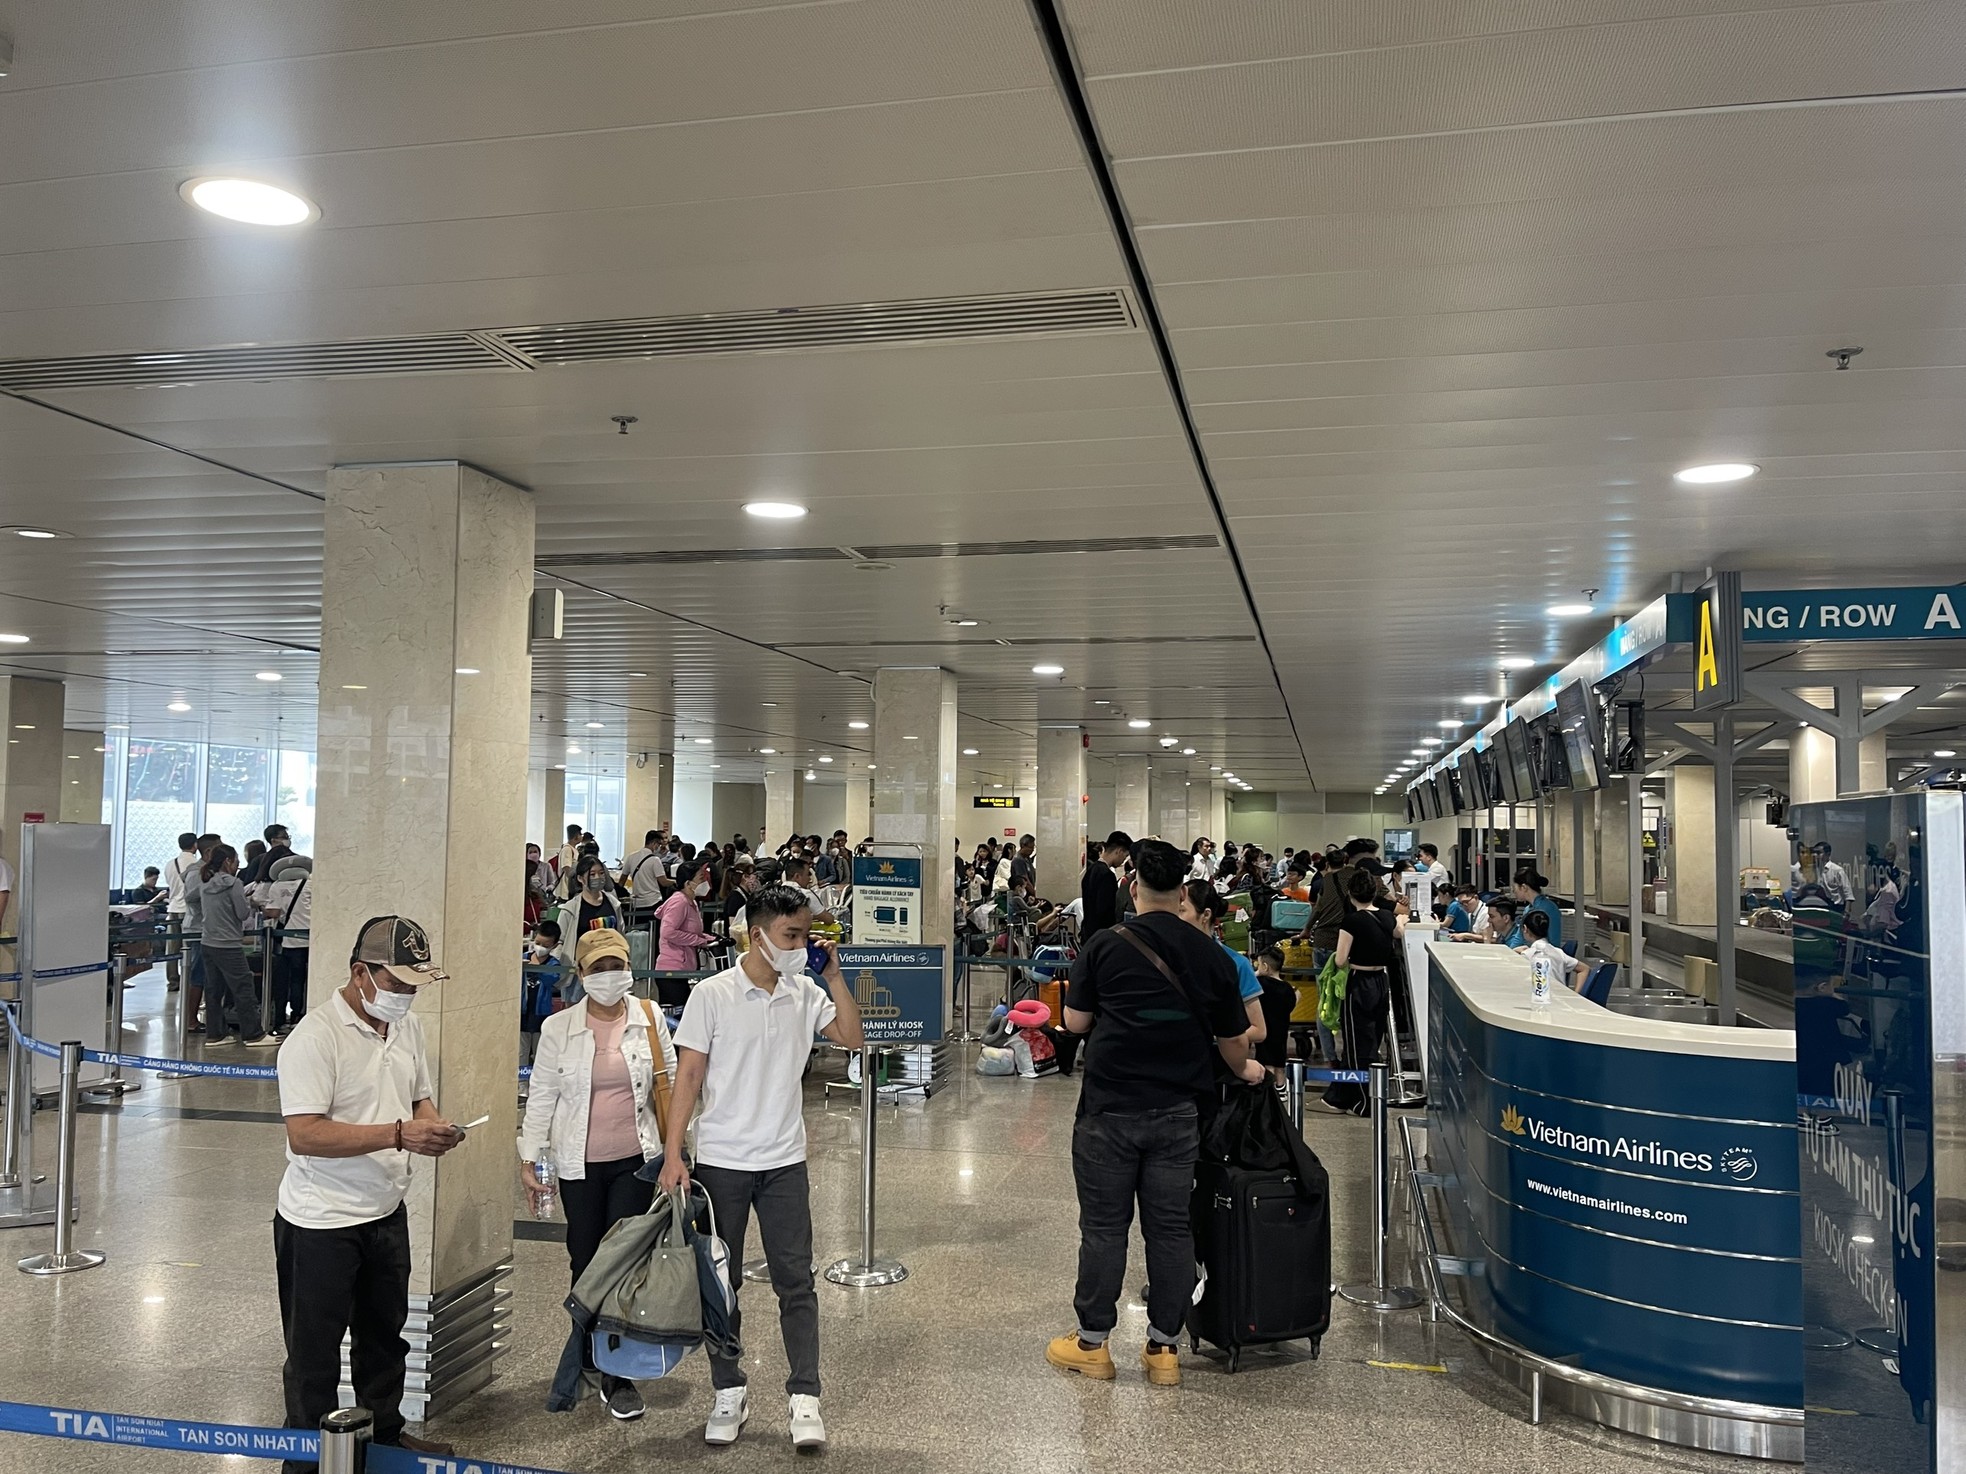 Bất ngờ hình ảnh Sân bay Tân Sơn Nhất, cửa ngõ về miền Tây ngày 26 Tết - Ảnh 6.